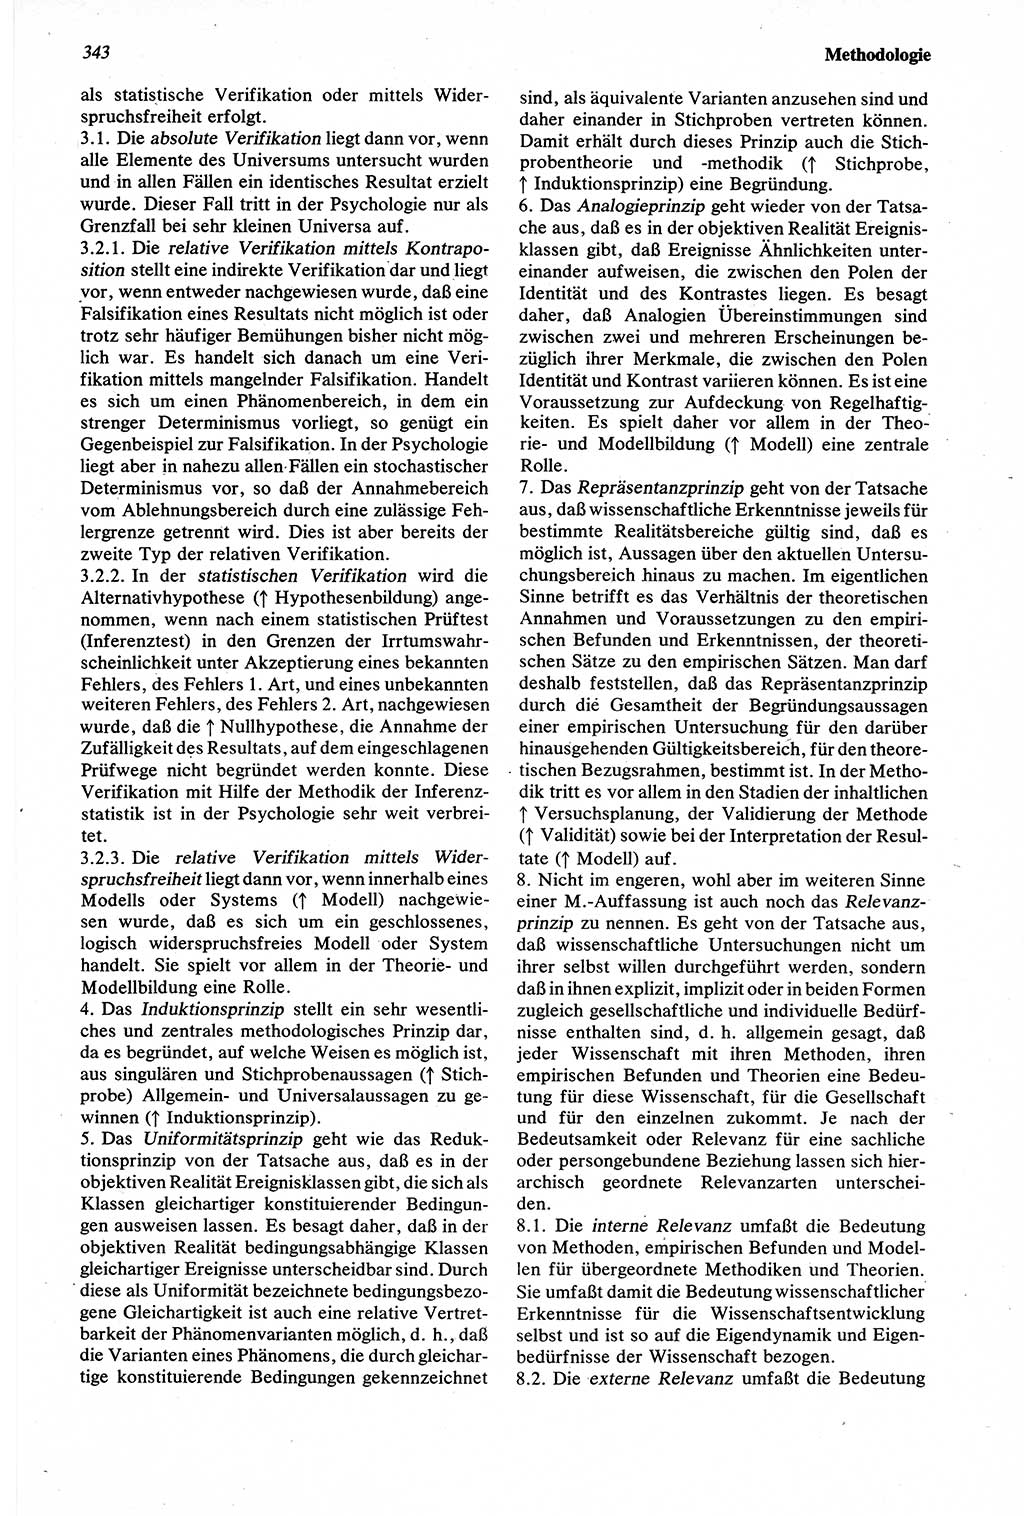 Wörterbuch der Psychologie [Deutsche Demokratische Republik (DDR)] 1976, Seite 343 (Wb. Psych. DDR 1976, S. 343)